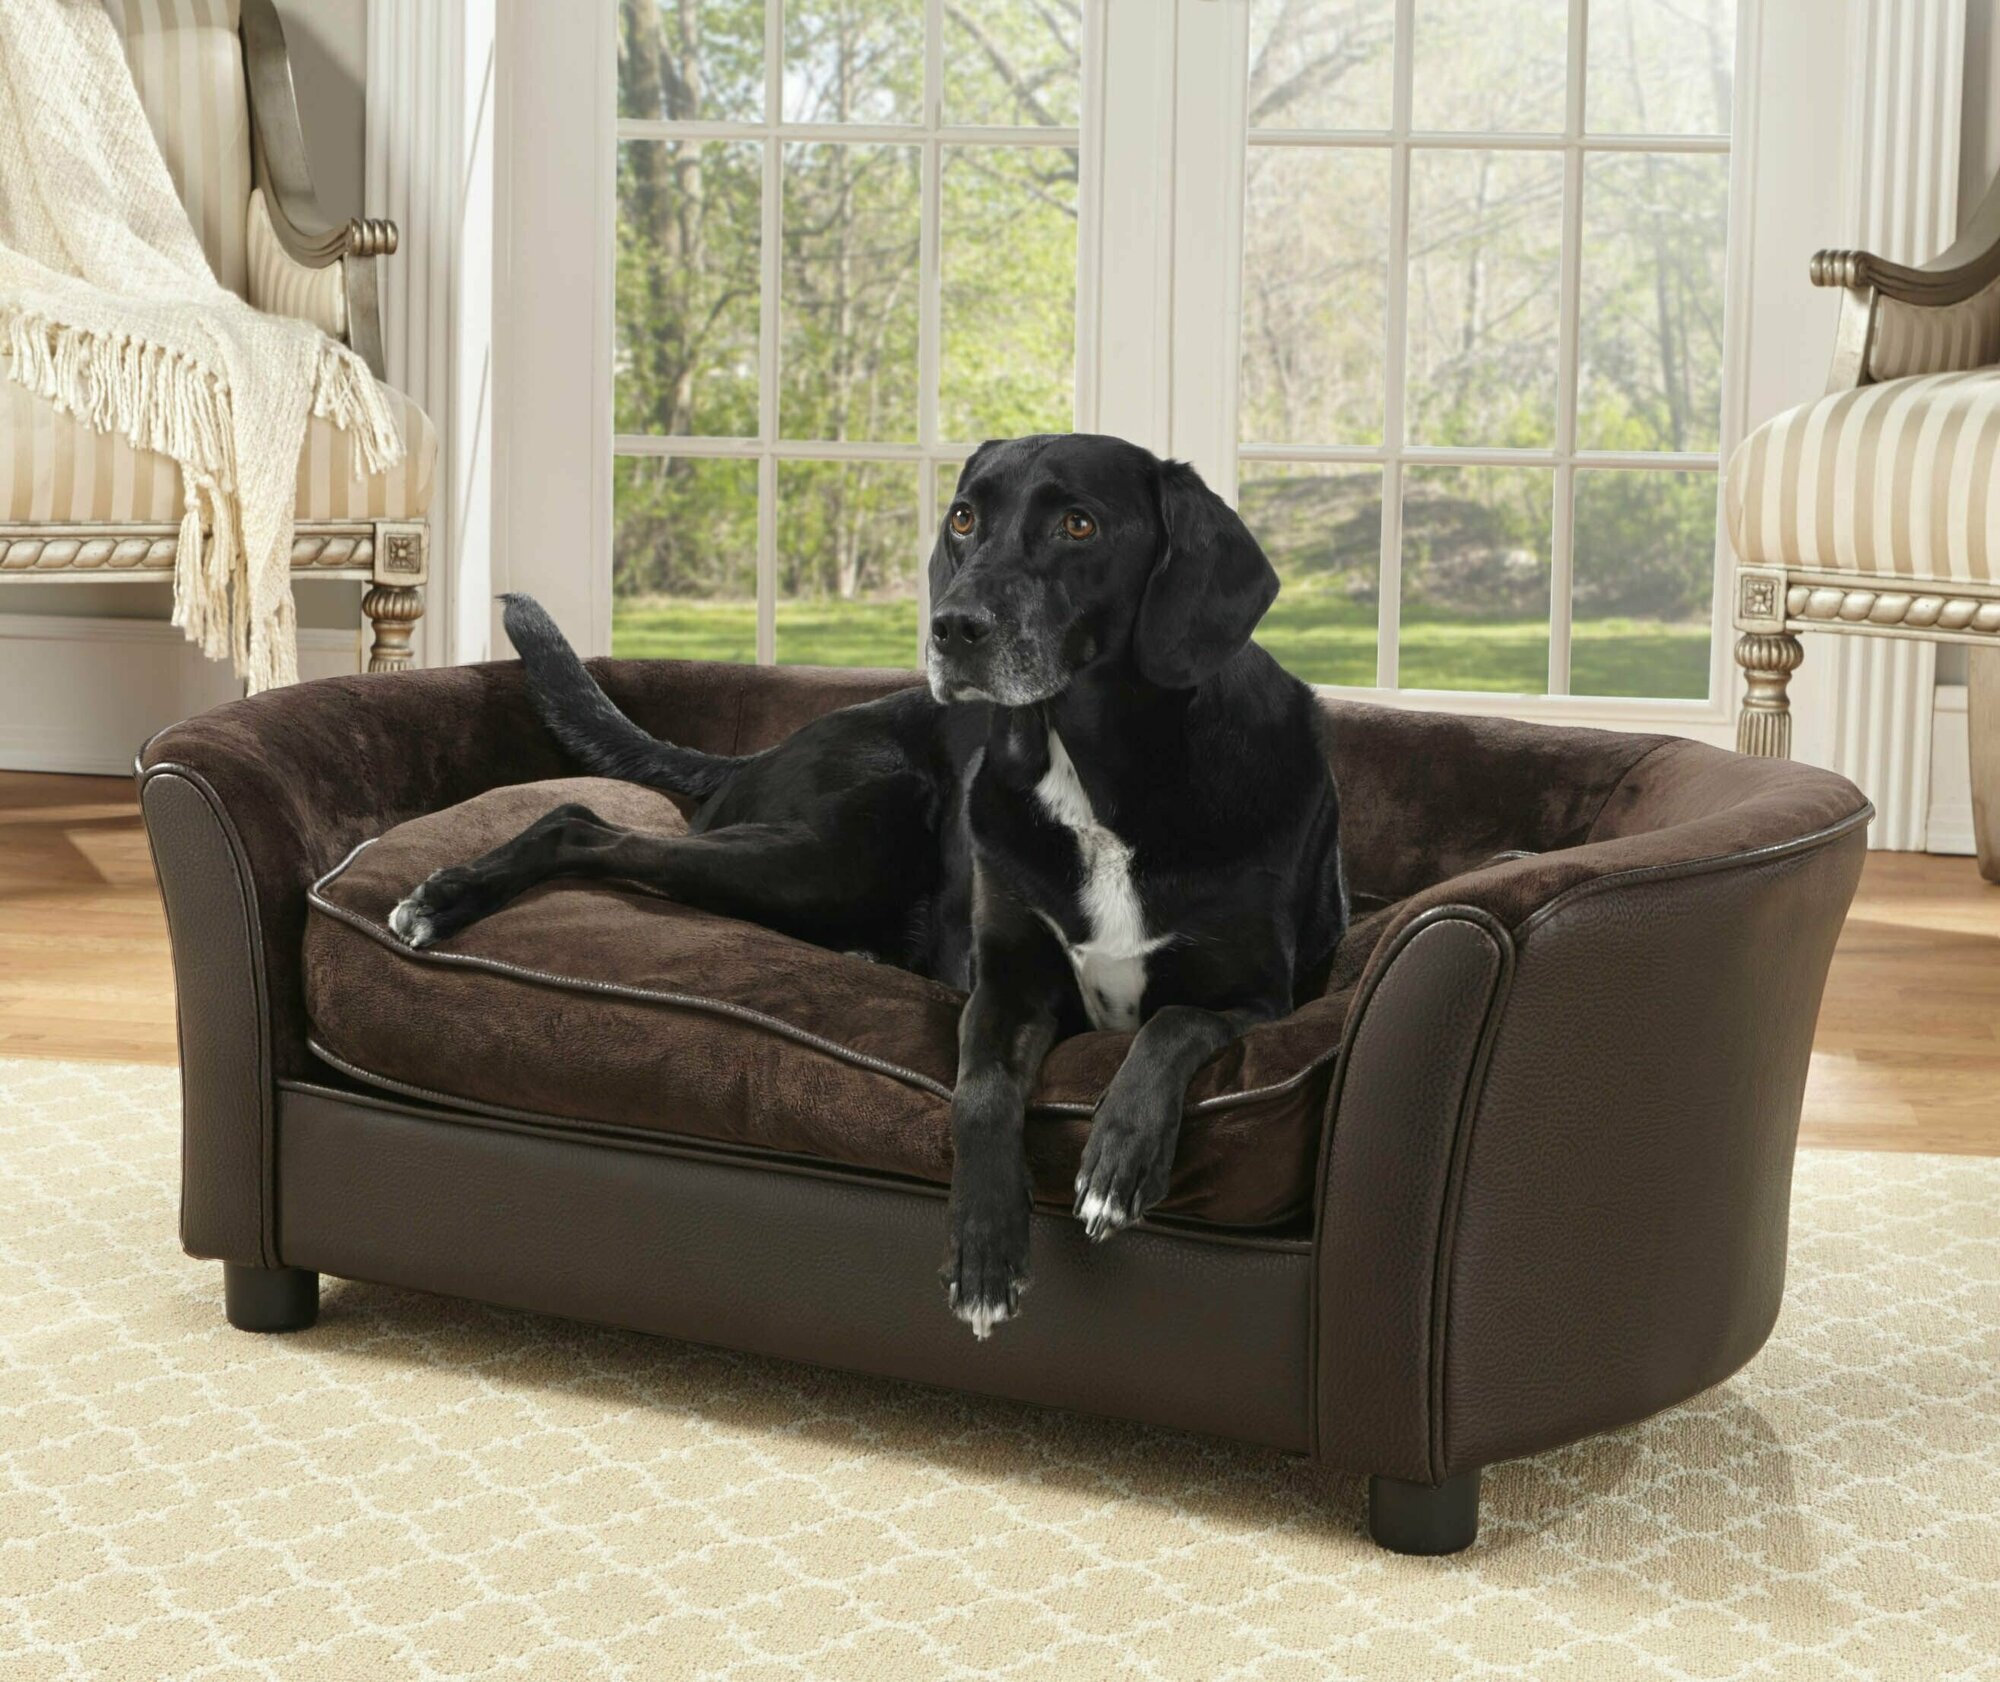 Диван лежак для собак FUNTIKSTORE "Вестминстер браун", 107x58x36, коричневый, для больших и средних пород собак